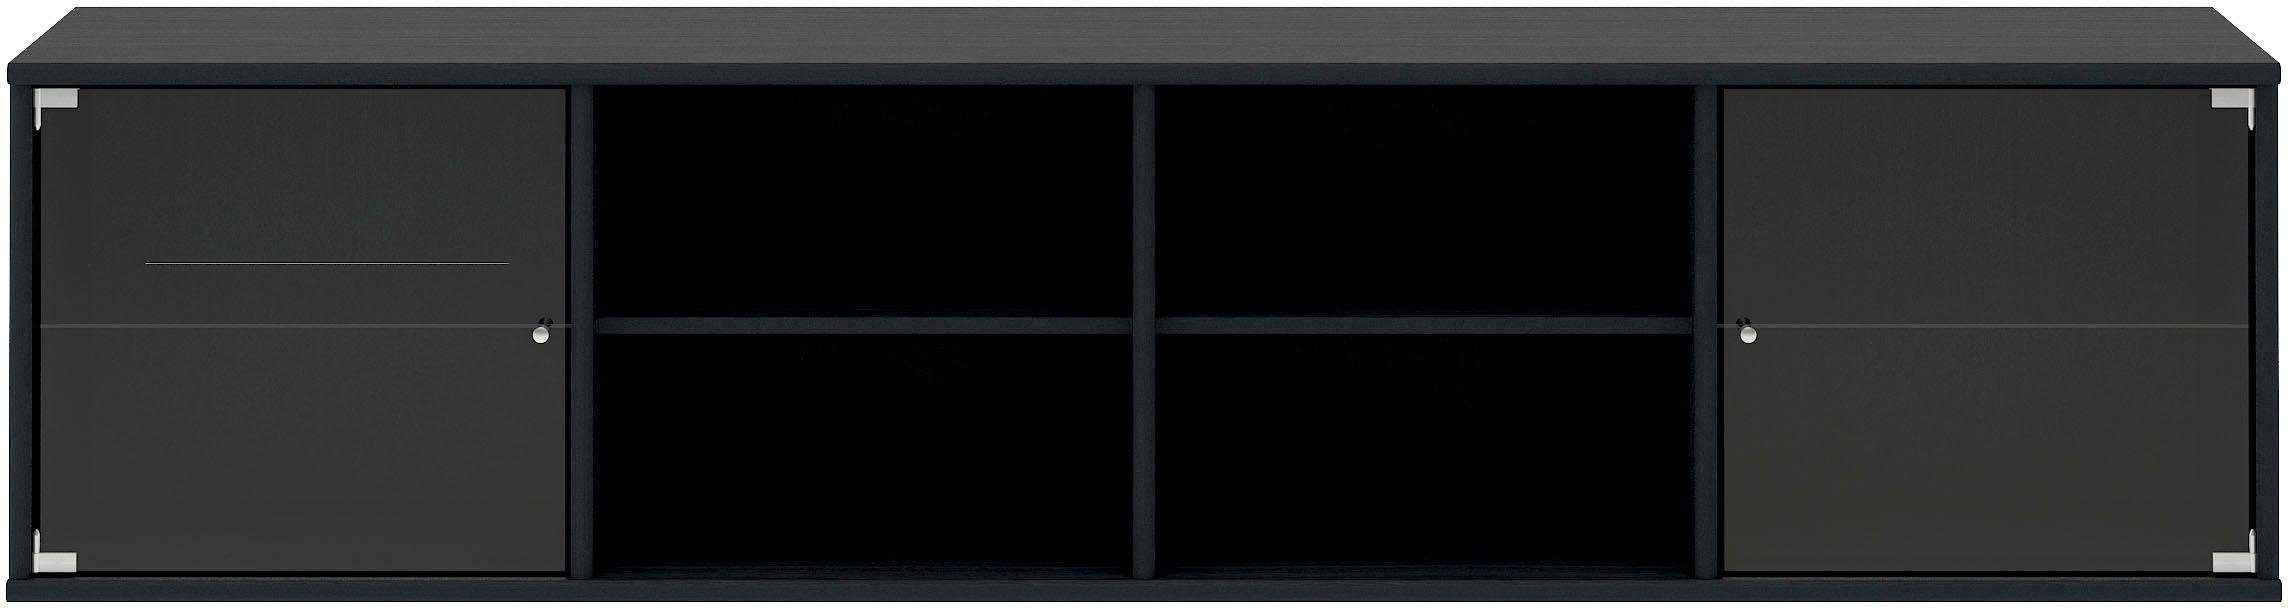 Vollendung Hammel Furniture Regal Mistral, hängend/stehend schwarz gebeizt lowboard, Designmöbel Hochwertig 177 Glastüren, zwei Lowboard, montierbar, B: cm, anpassungsbar mit